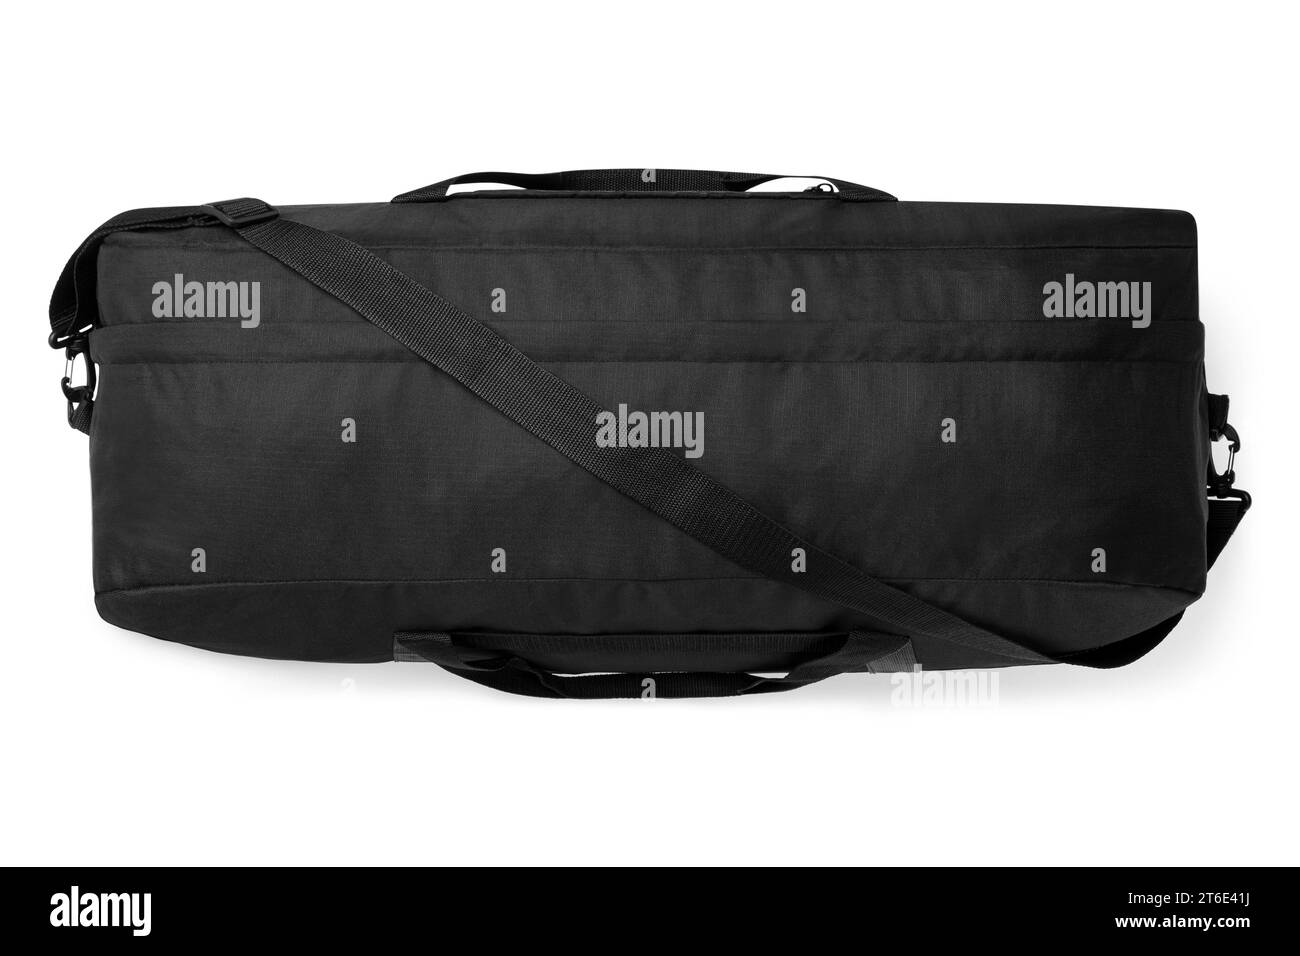 close up noir outdoor tendance sports personnalisé sac bandoulière en nylon duffle gym sacs de voyage pour hommes femmes isolé sur fond blanc. vue de dessus Banque D'Images